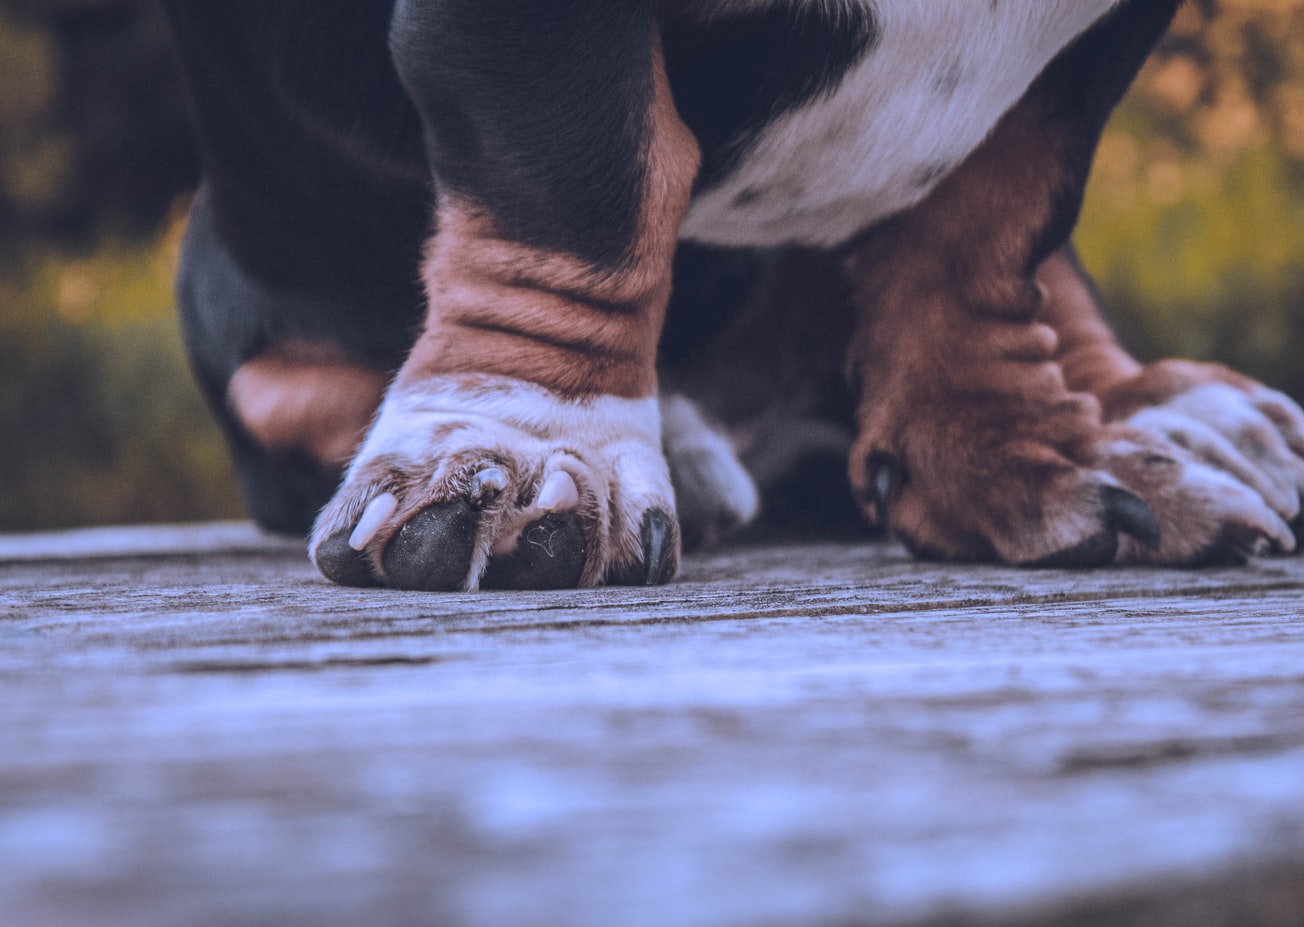 ZOOLEADER | ▲ Как правильно обрезать когти собаке легко и не больно - Рекомендации от ветеринара